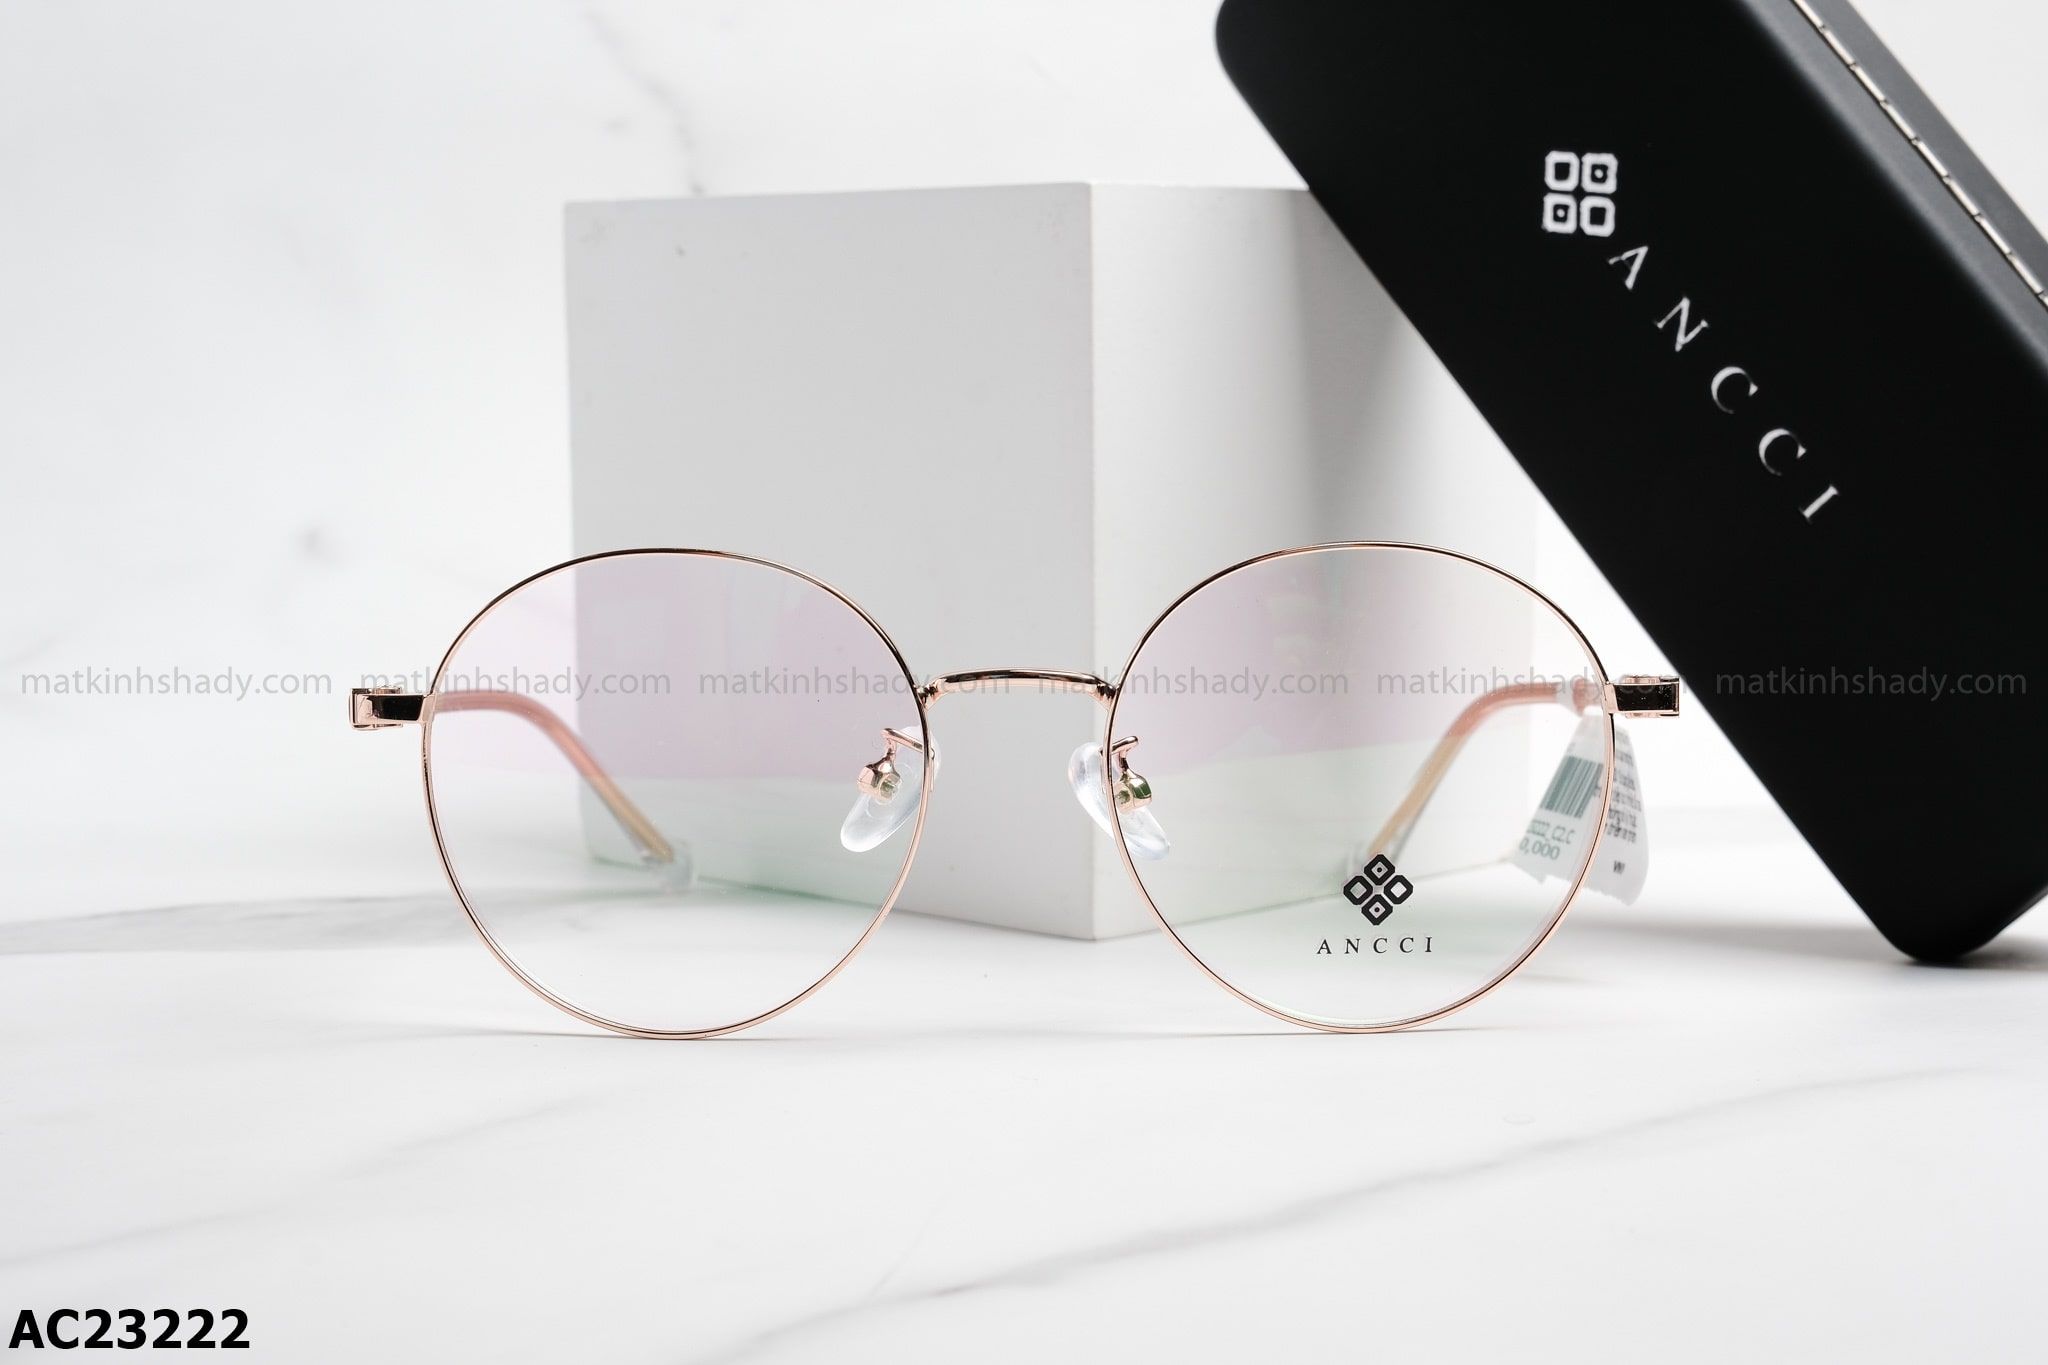  ANCCI Eyewear - Glasses - AC23222 